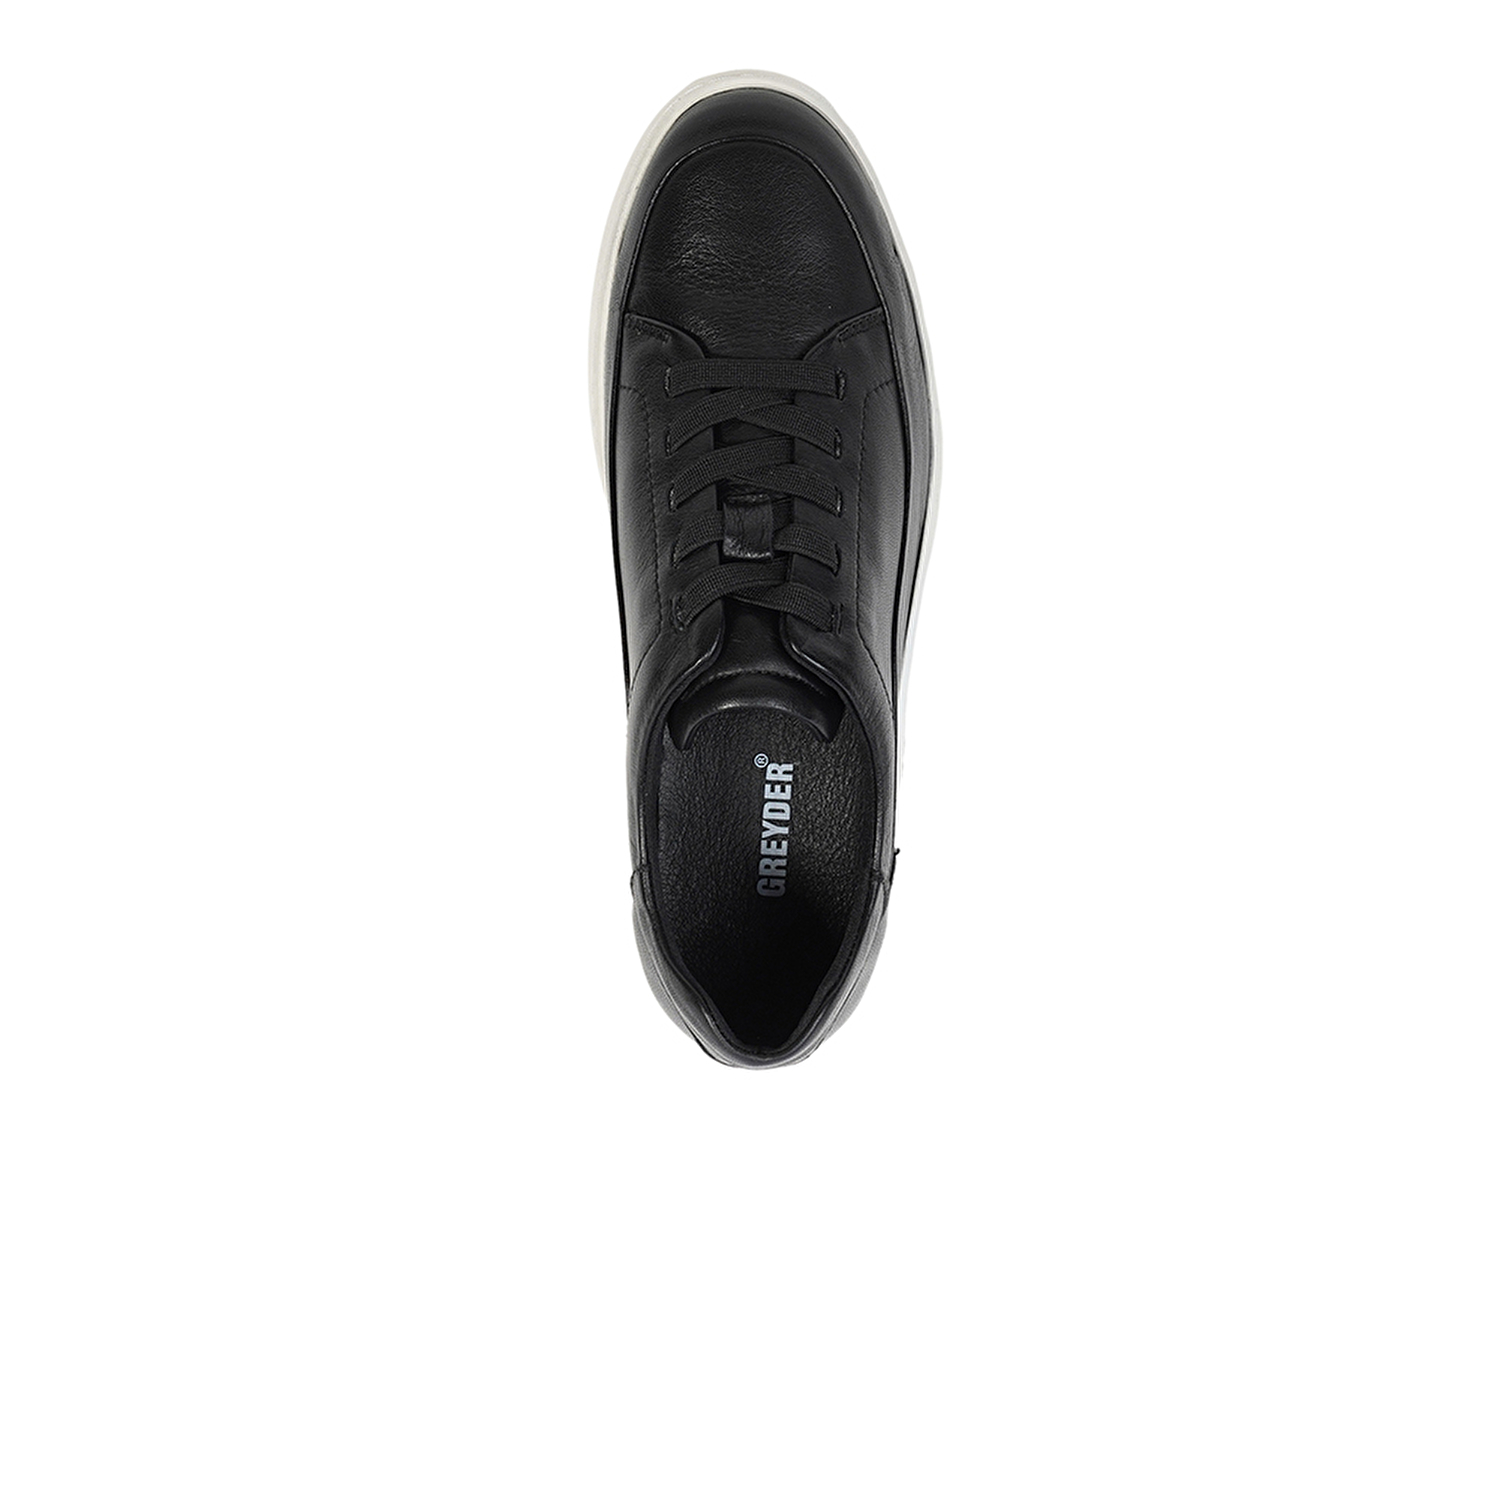 Kadın Siyah Hakiki Deri Sneaker Ayakkabı 4Y2FA59052-3